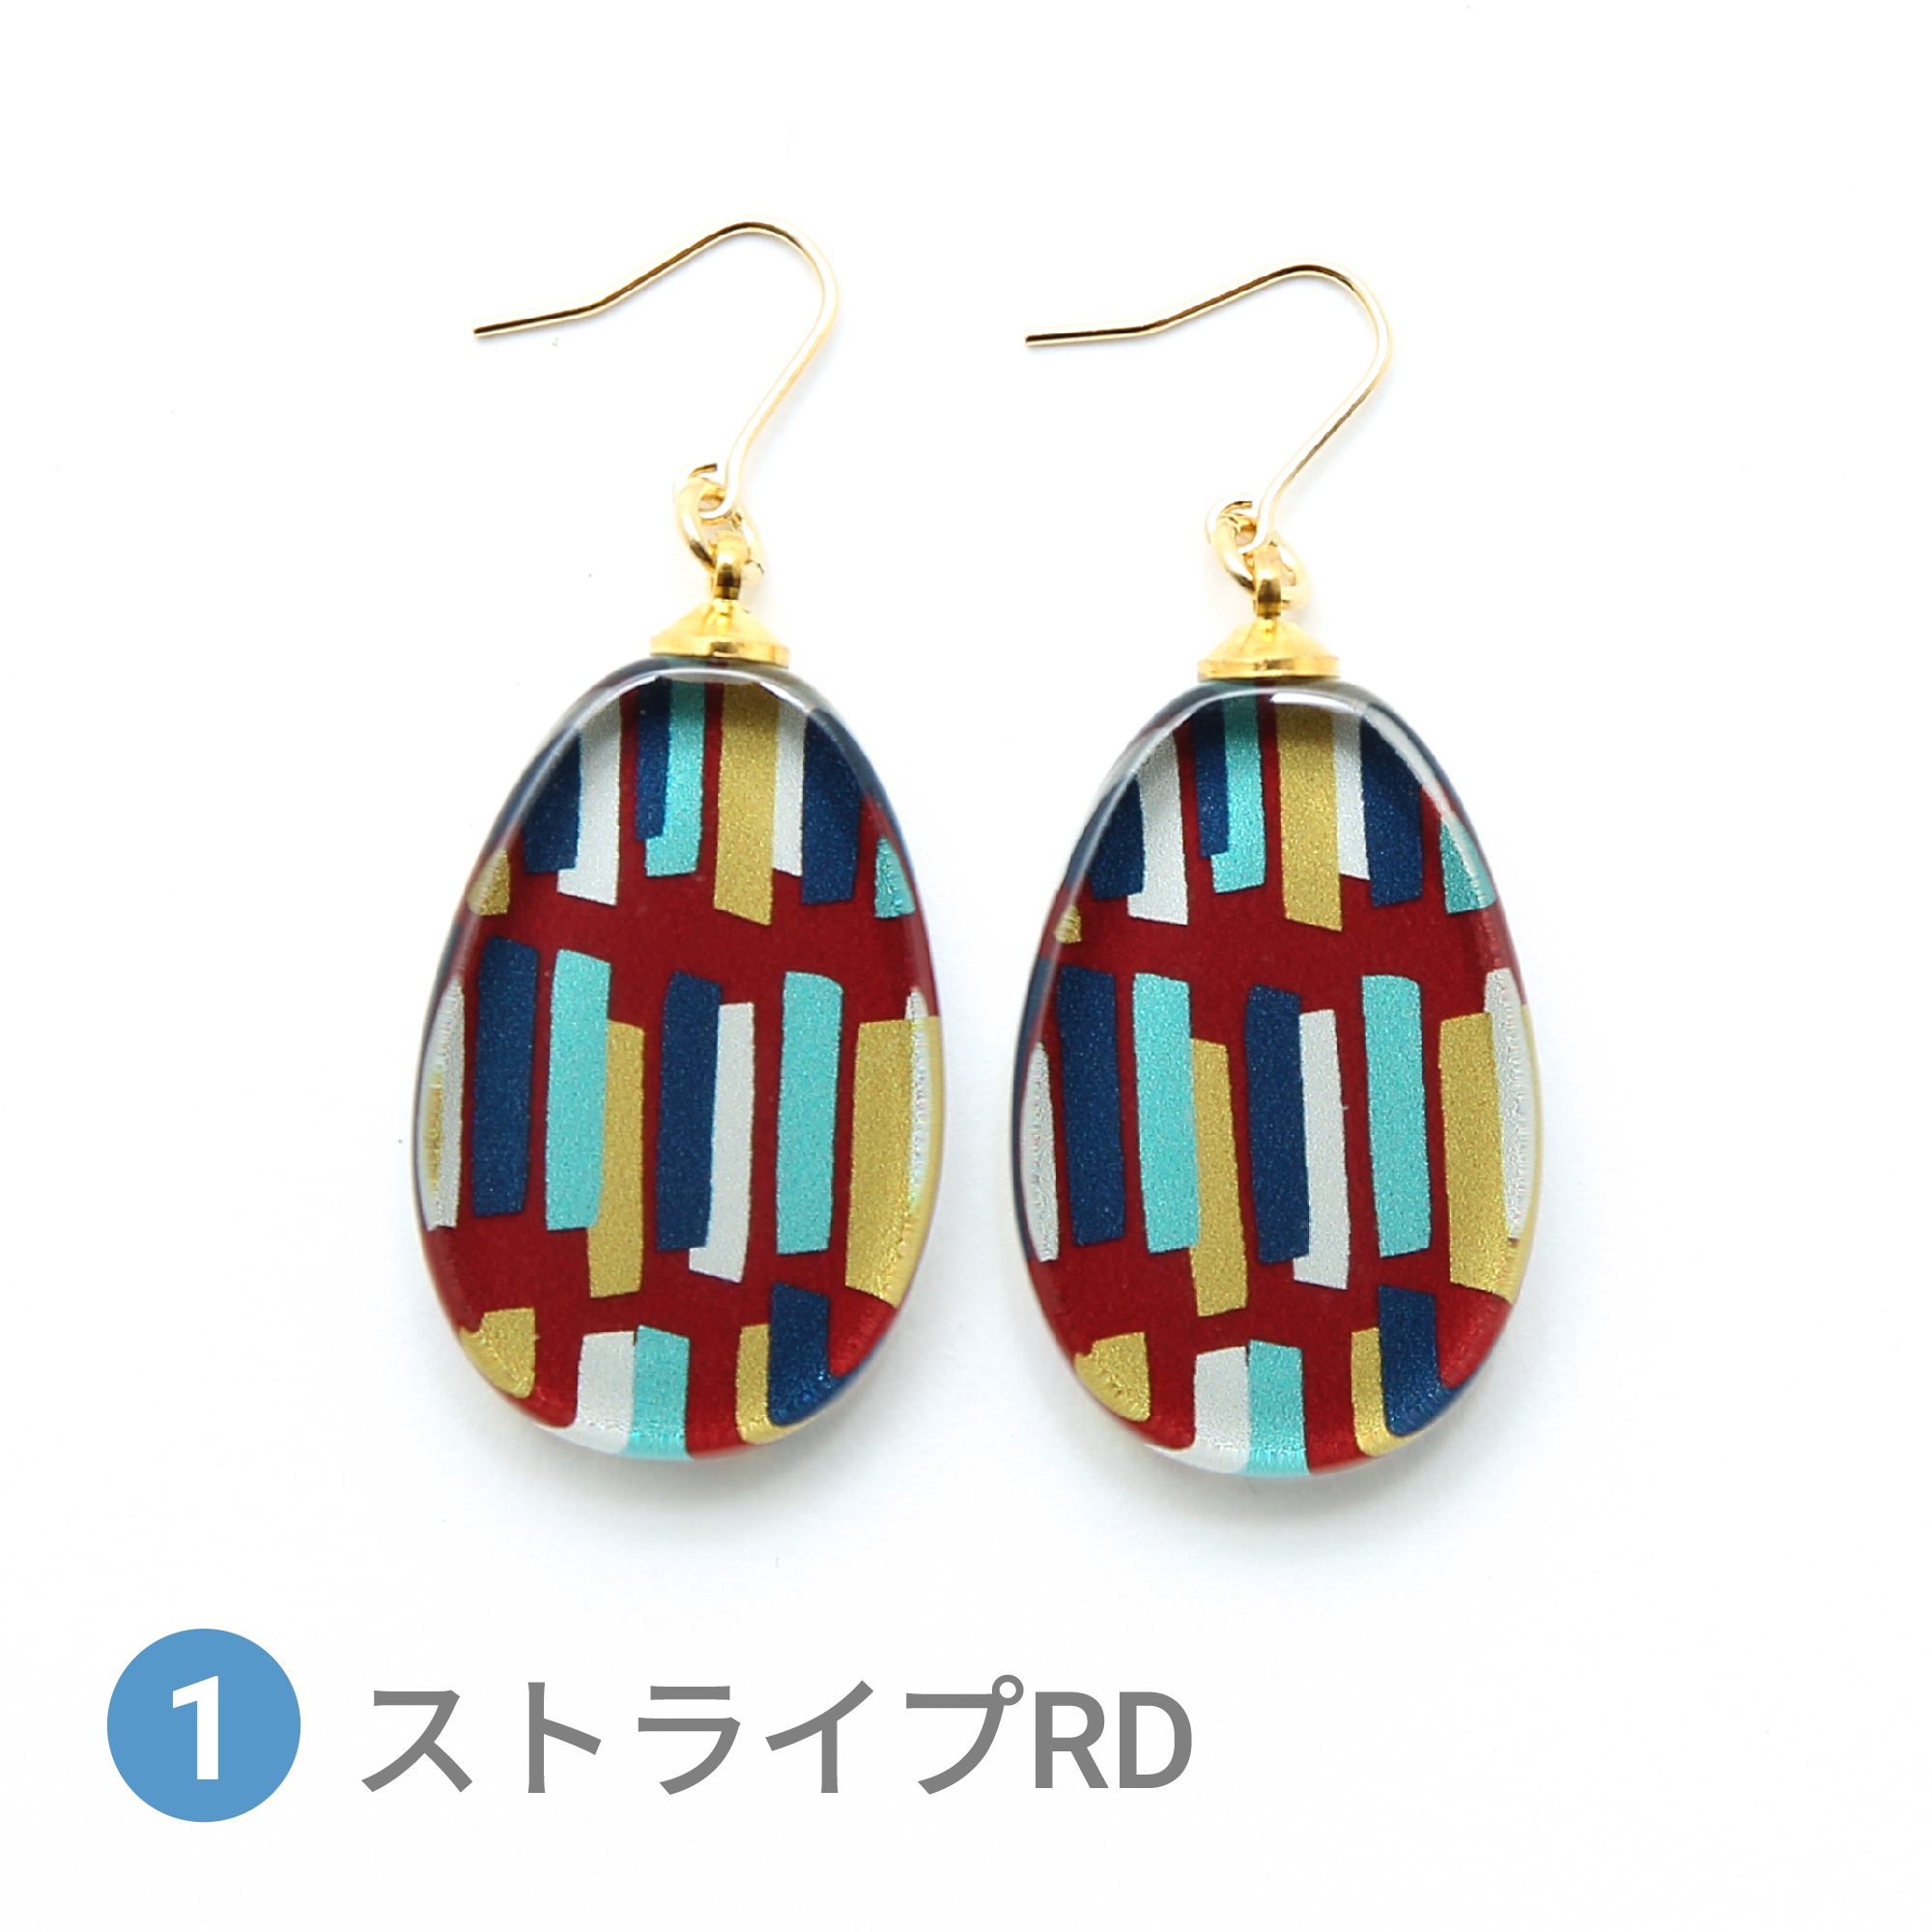 Glass accessories Pierced Earring SCANDINAVIAN stripe red drop shape